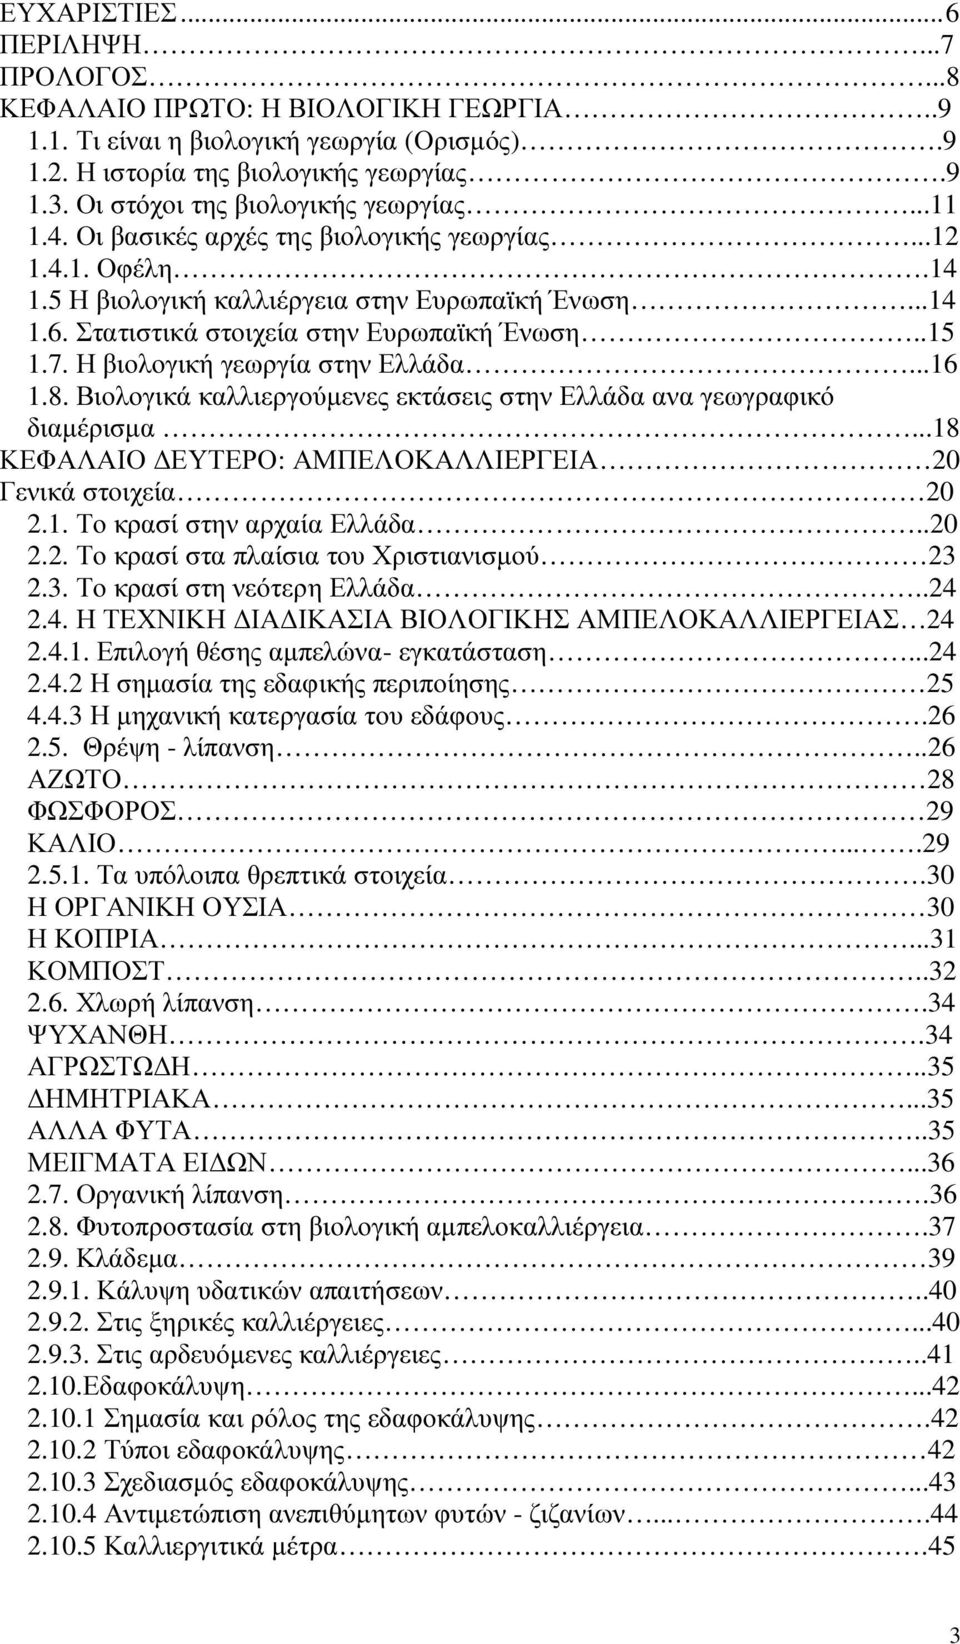 Στατιστικά στοιχεία στην Ευρωπαϊκή Ένωση..15 1.7. Η βιολογική γεωργία στην Ελλάδα...16 1.8. Βιολογικά καλλιεργούµενες εκτάσεις στην Ελλάδα ανα γεωγραφικό διαµέρισµα.